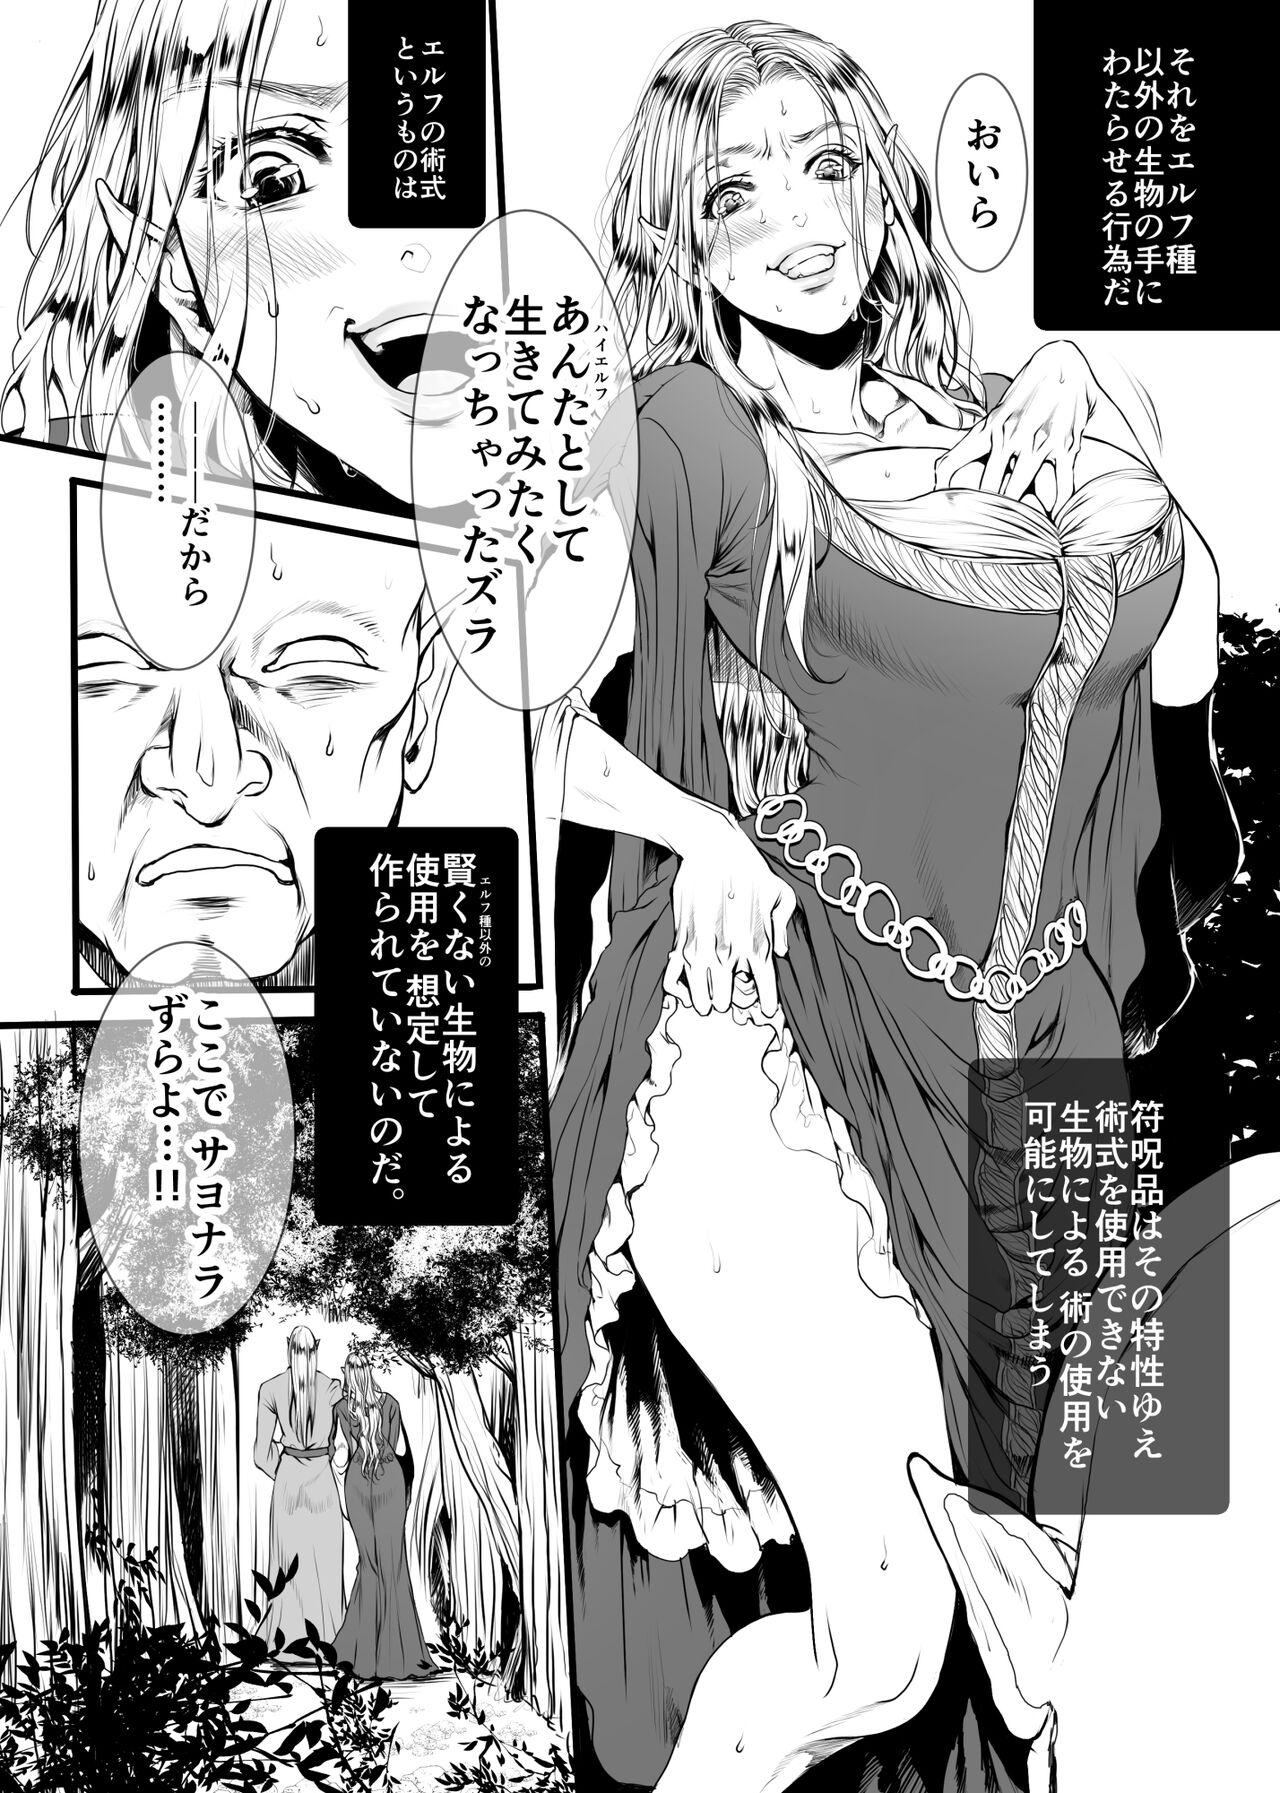 Bra Kansei wo Akiramta TSF Manga Jacking Off - Page 5